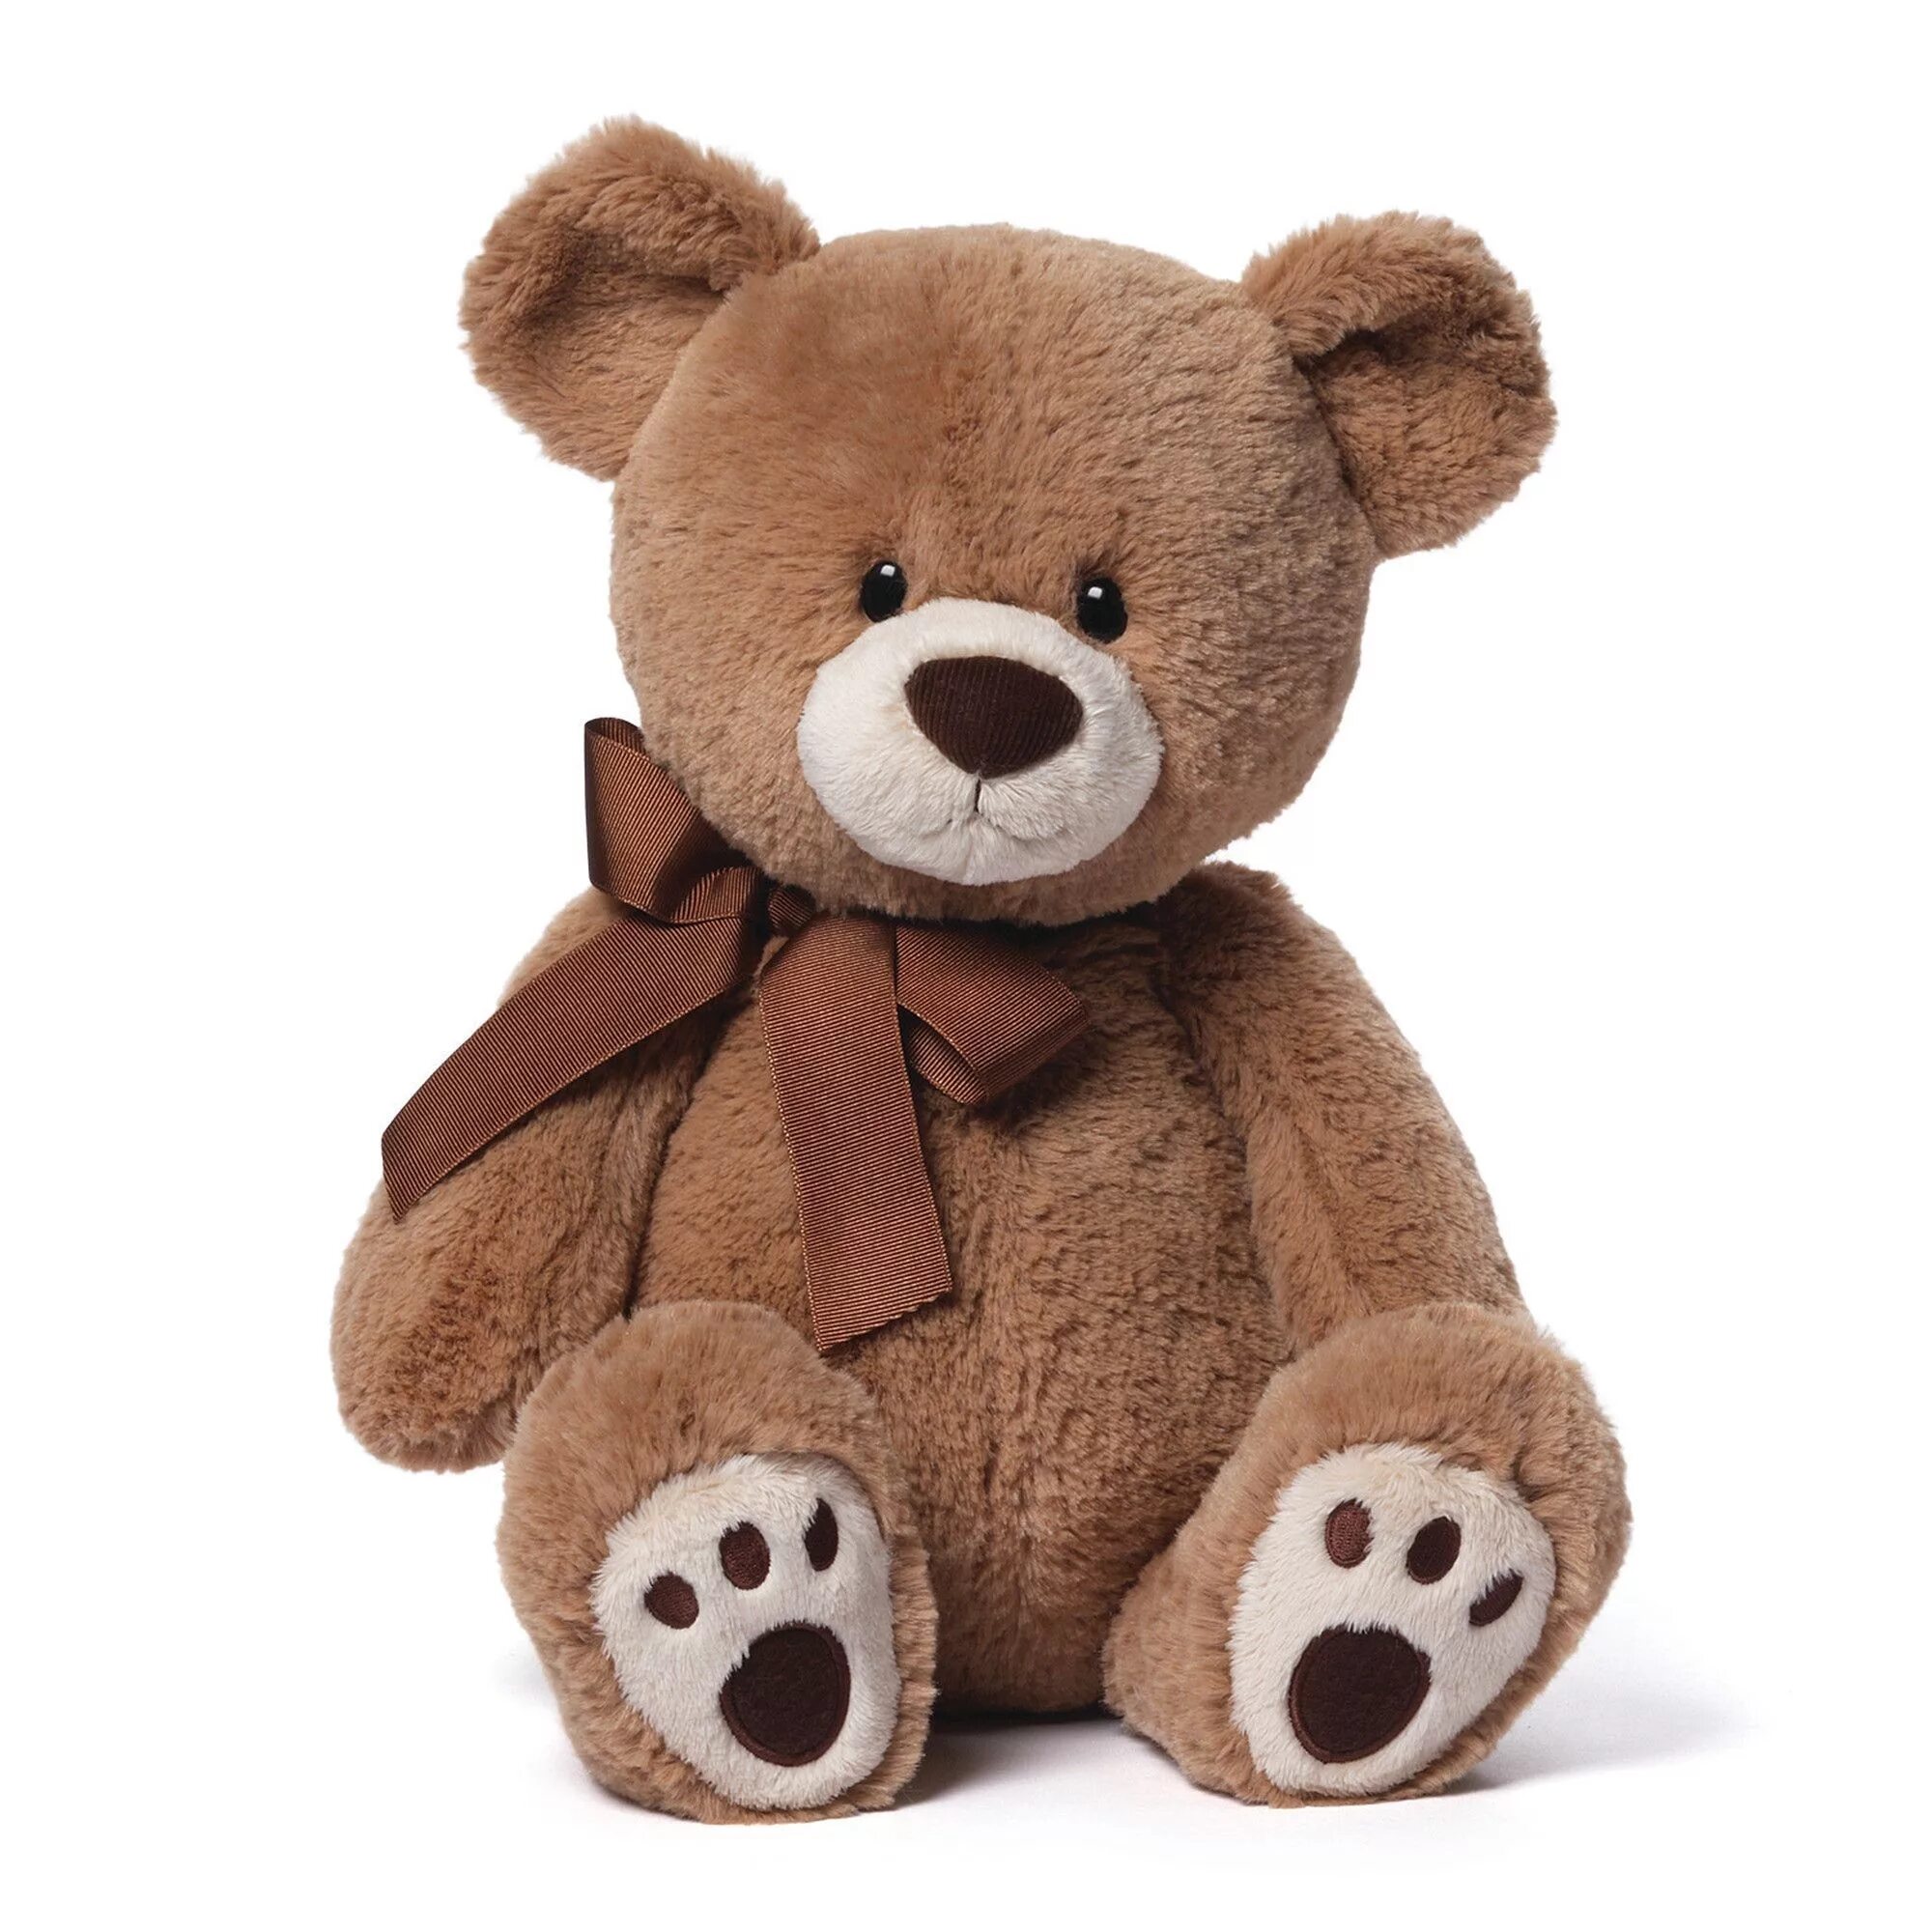 Тедди Беар. Teddy Bear игрушка. Ребенок с плюшевым мишкой. Teddy Soft Toys.